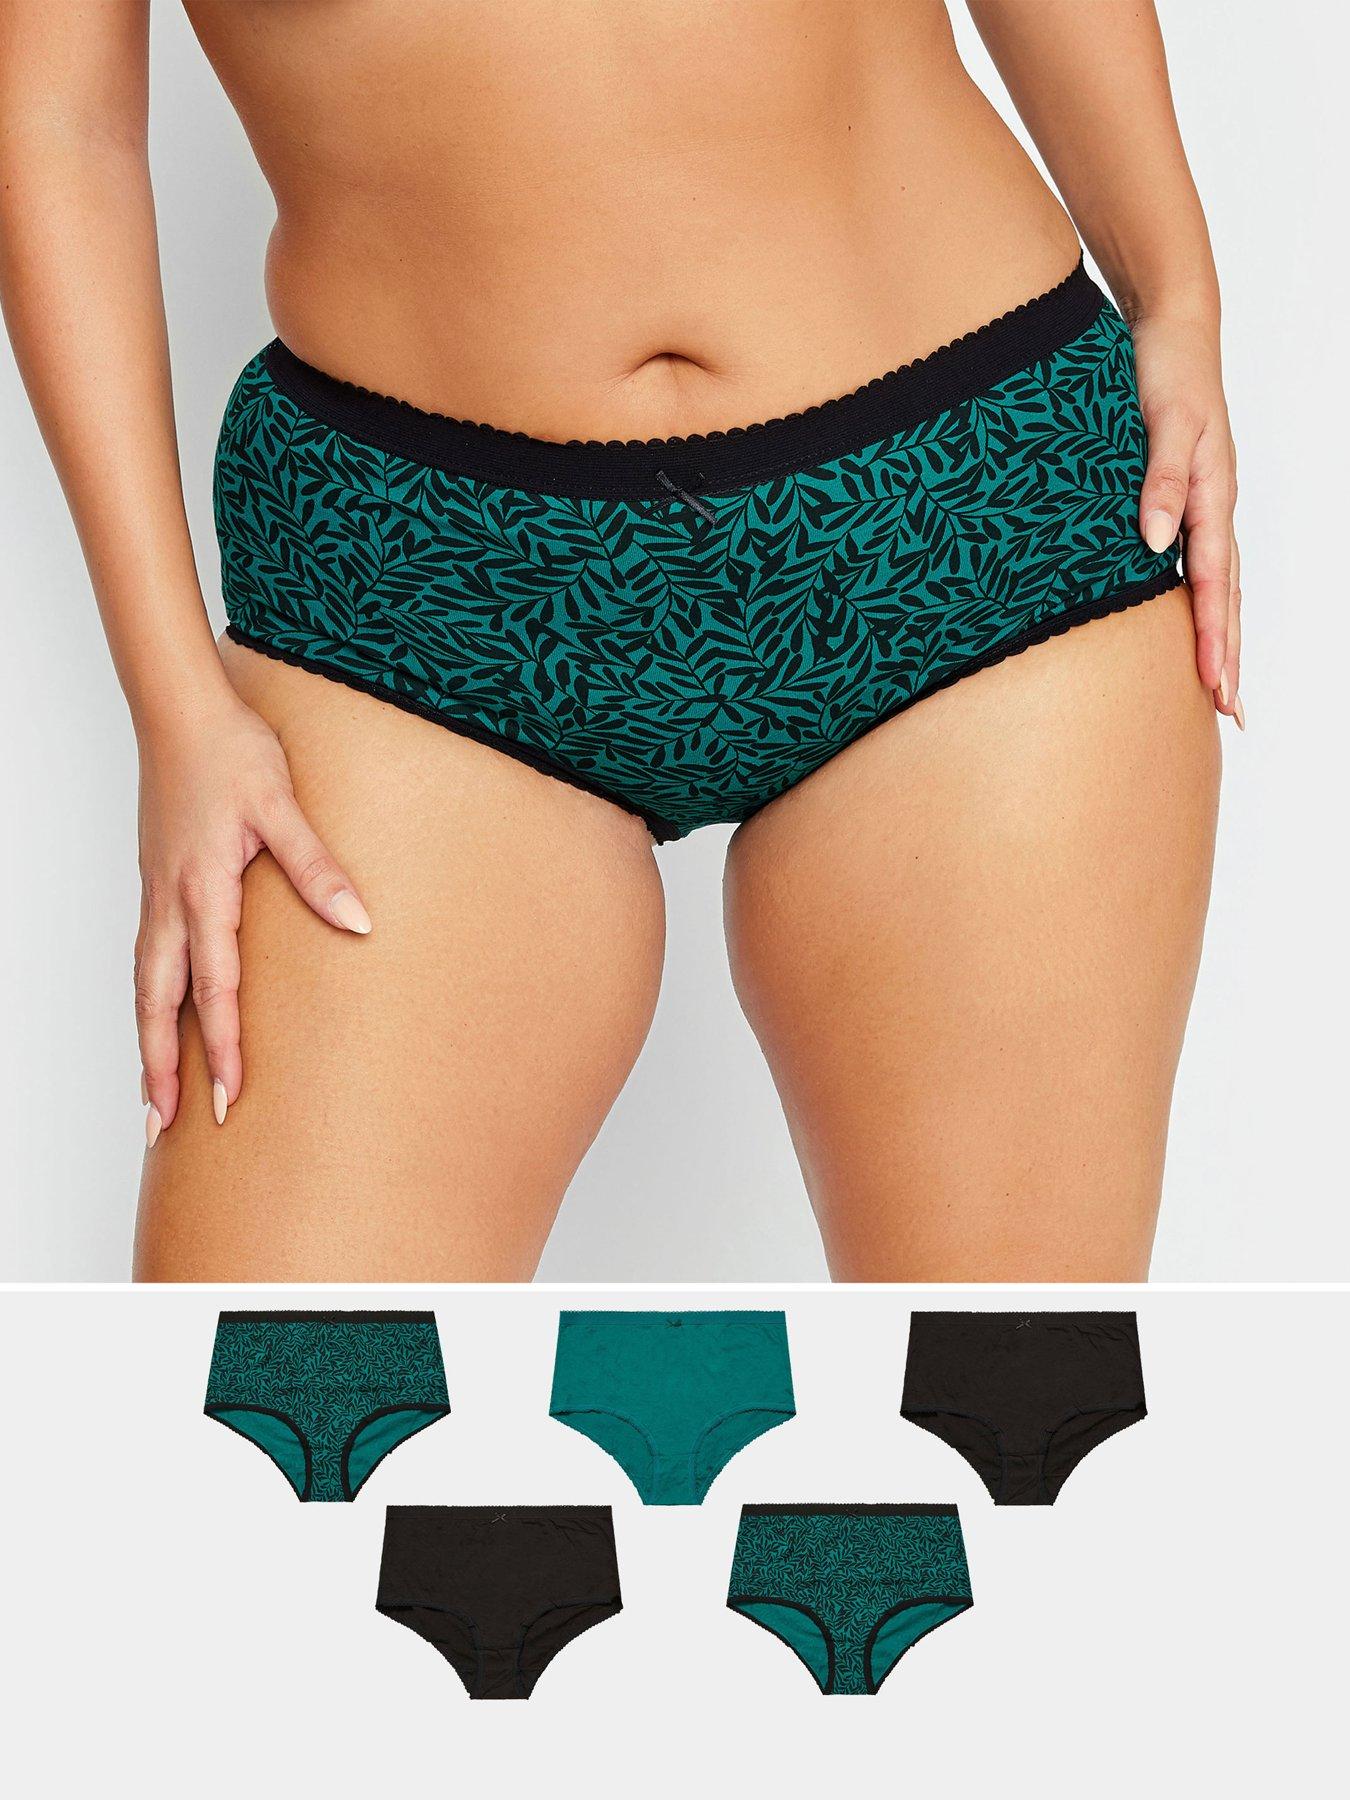 Anne Klein Stretch Seamless 3 pc Underwear Set in neutral colors